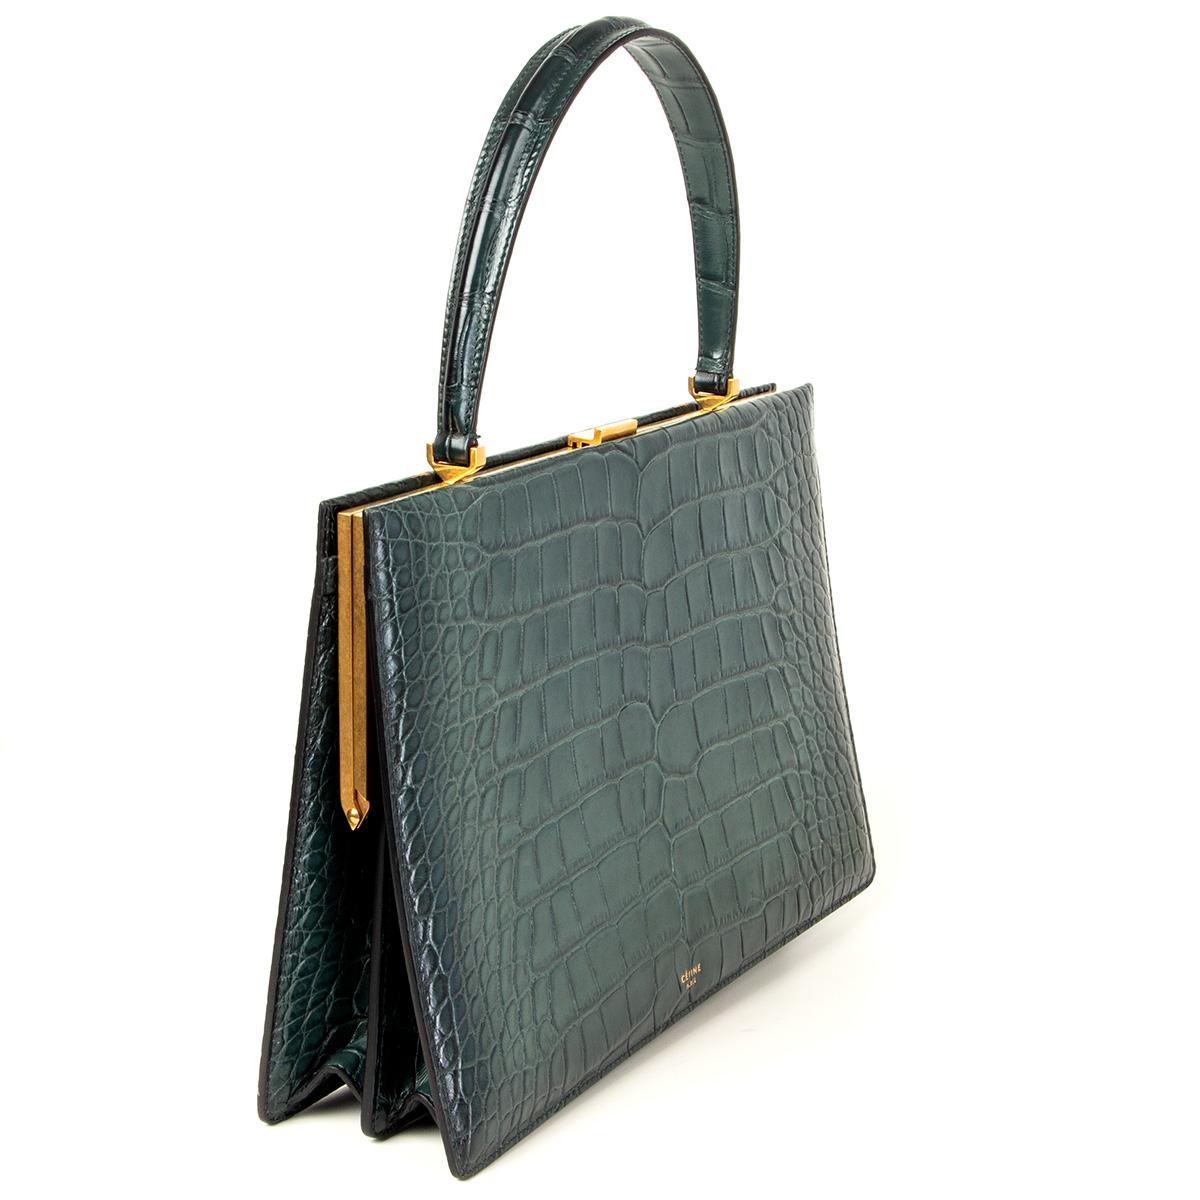 100% authentische Céline Medium Clasp Bag IN Zypressengrünem Krokodil und goldfarbener Hardware. Gefüttert mit zypressengrünem Lammfell und unterteilt in drei Fächer mit einem Reißverschlussfach in der Mitte. Wurde getragen und ist in